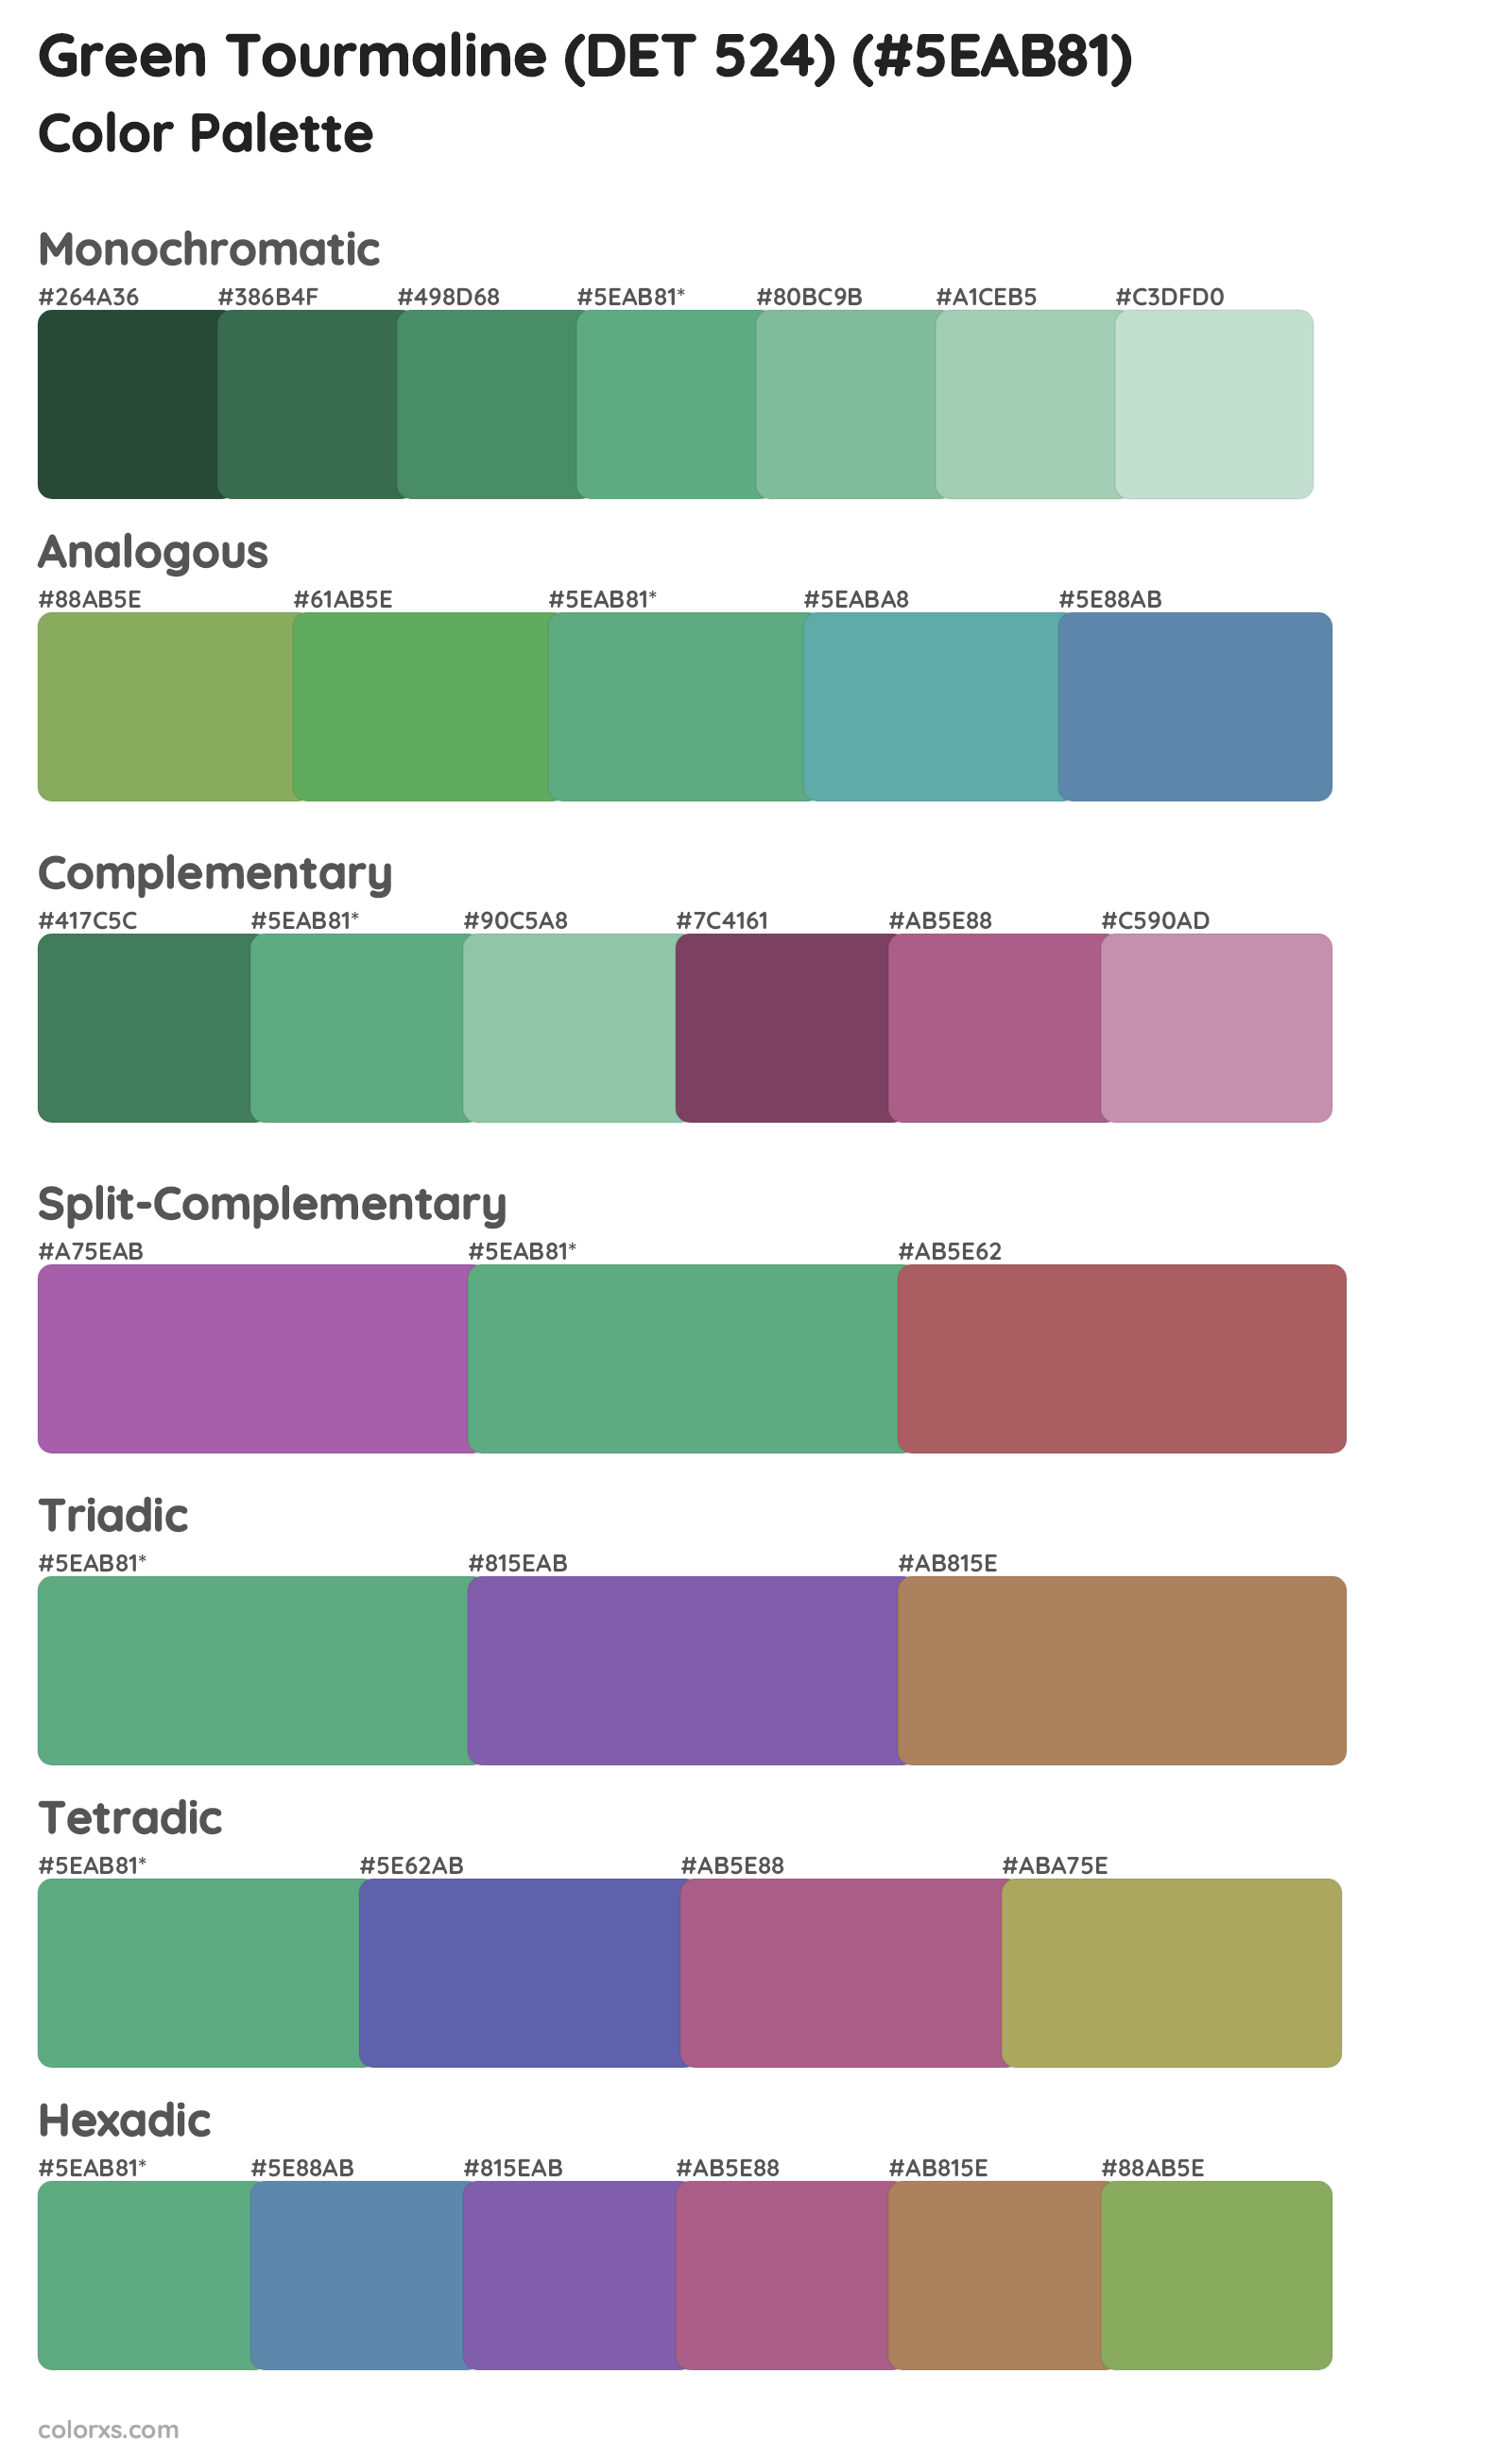 Green Tourmaline (DET 524) Color Scheme Palettes